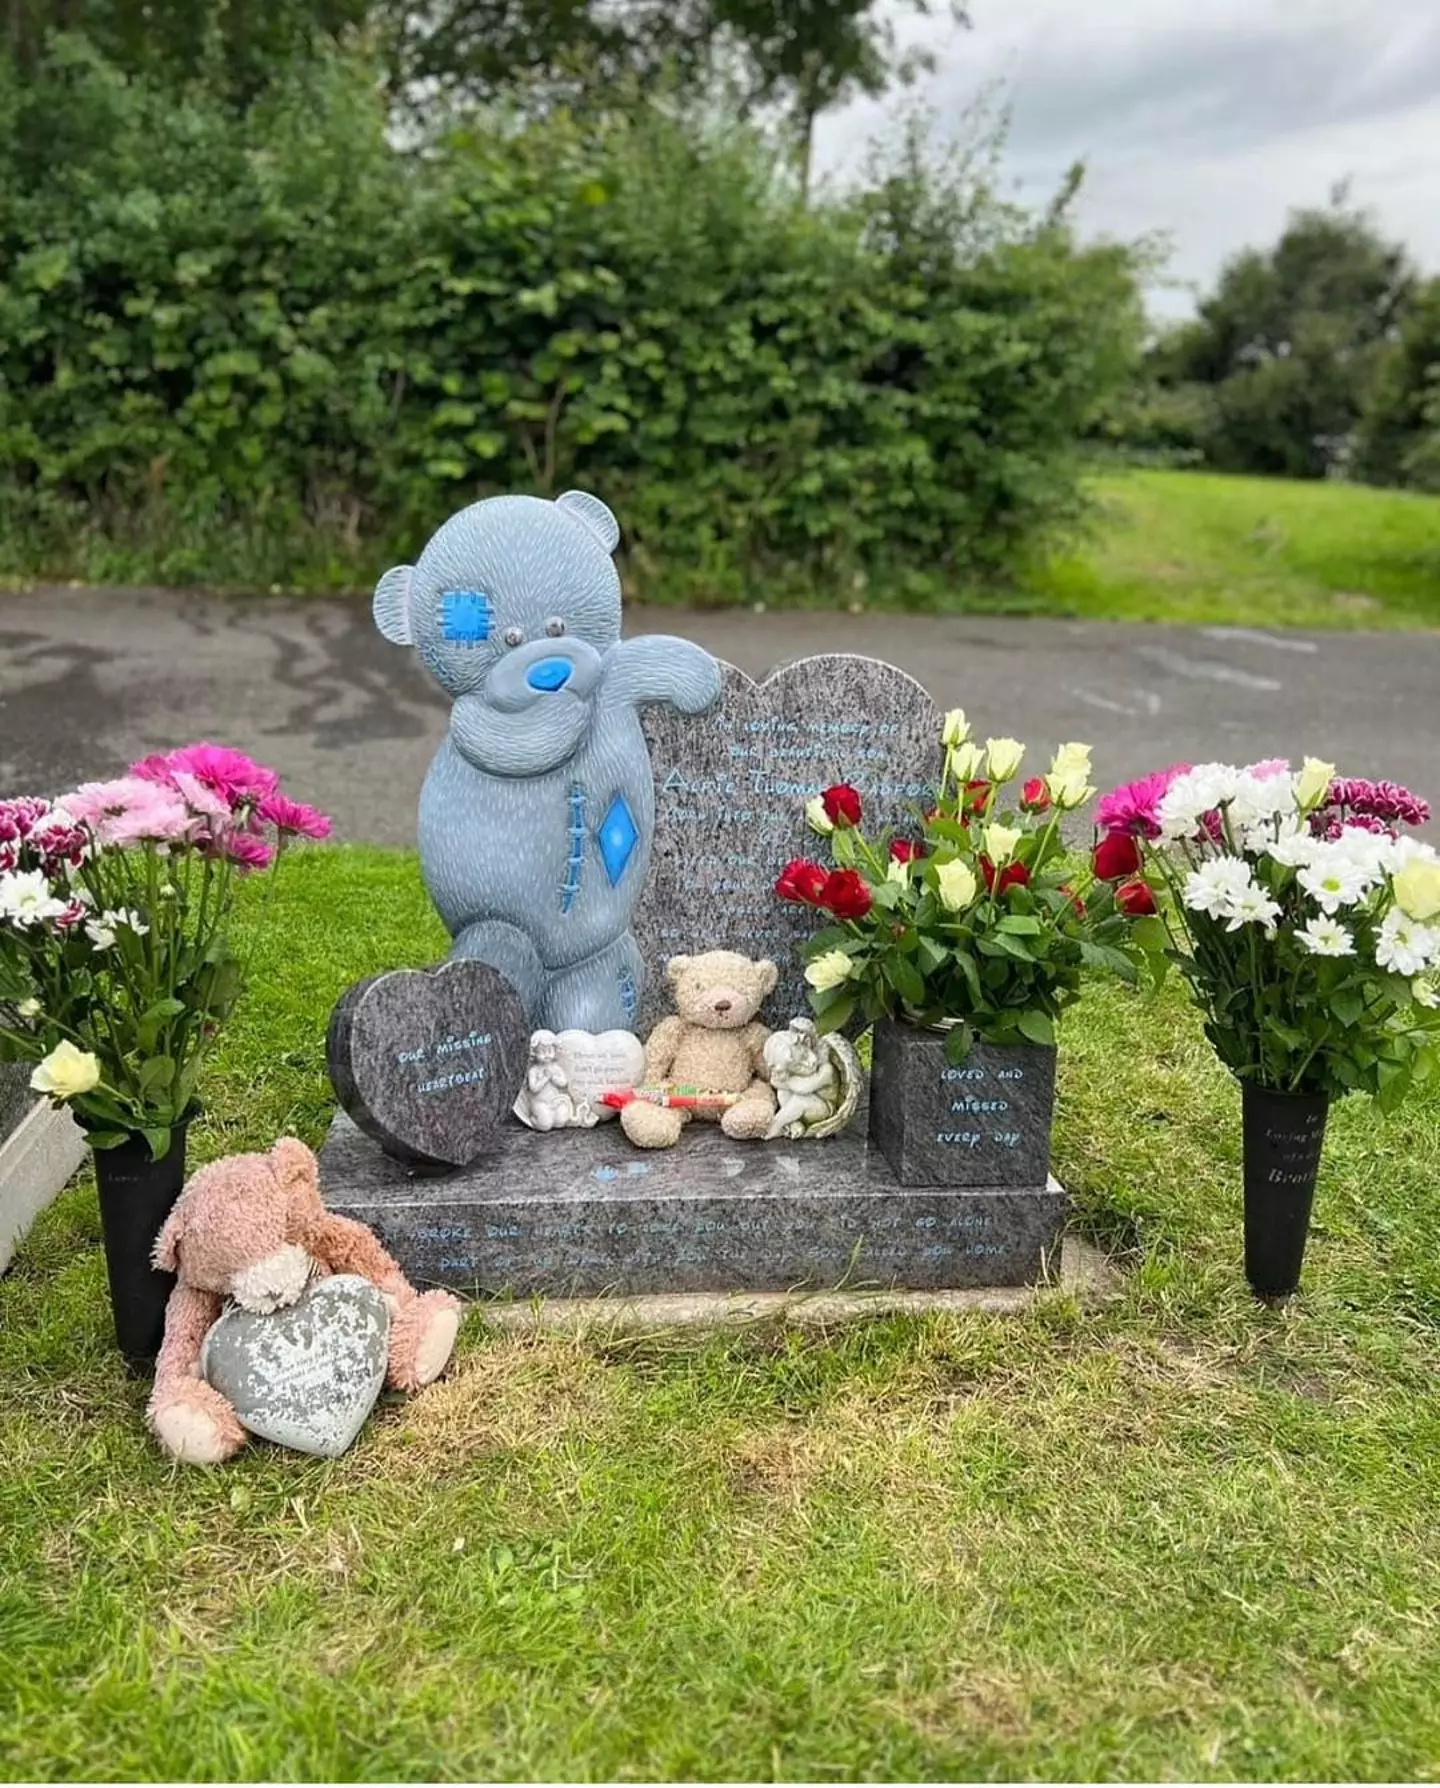 Sue shared a tribute to stillborn son Alfie on Instagram.